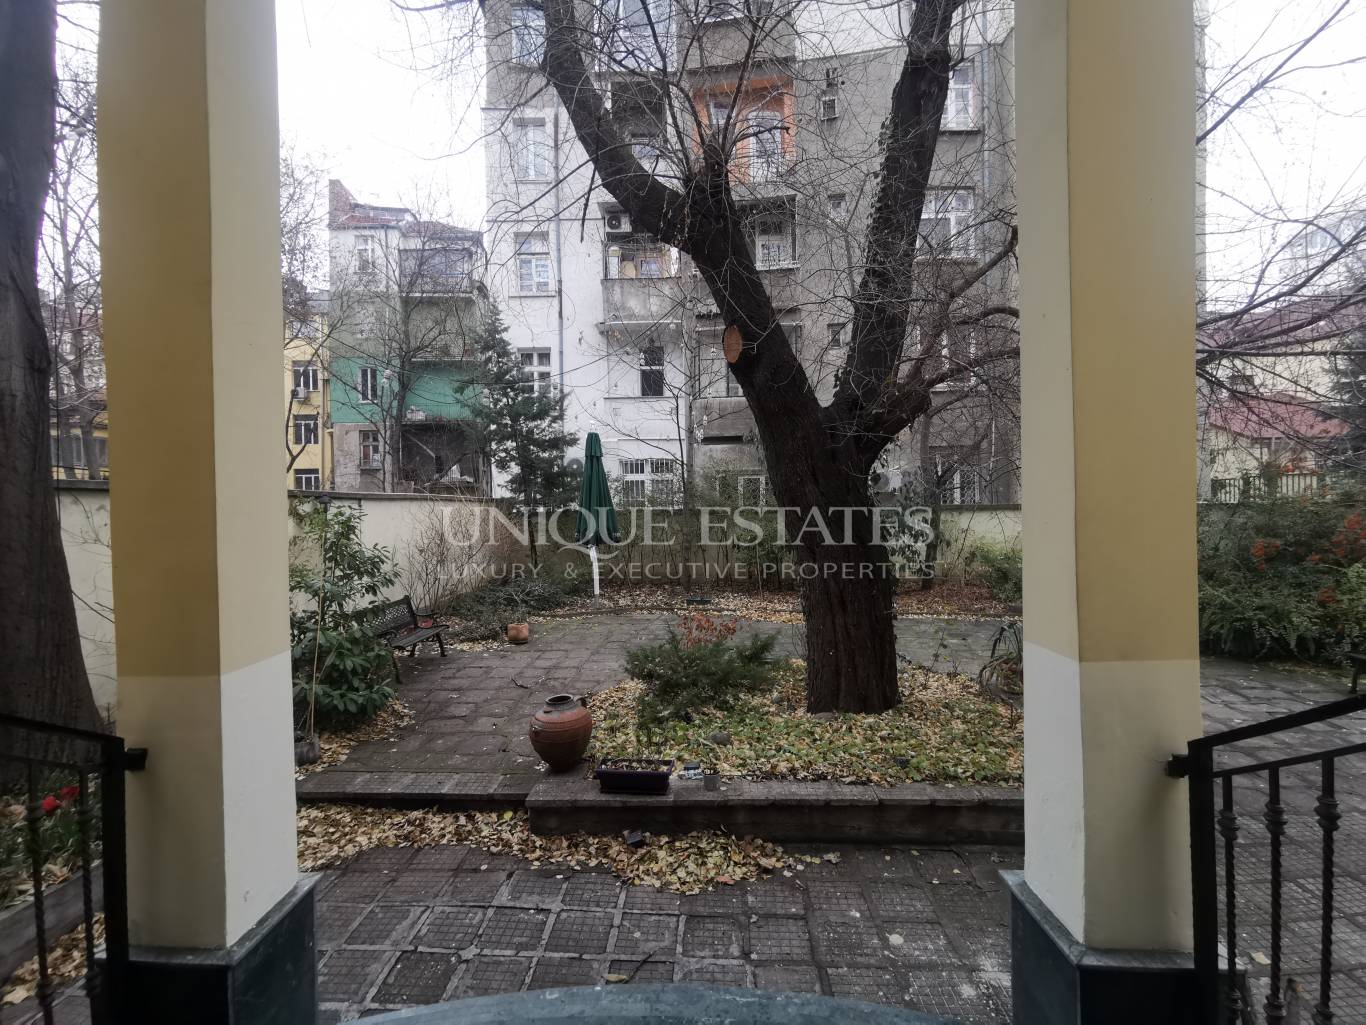 Офис под наем в София, Център - код на имота: N12352 - image 16